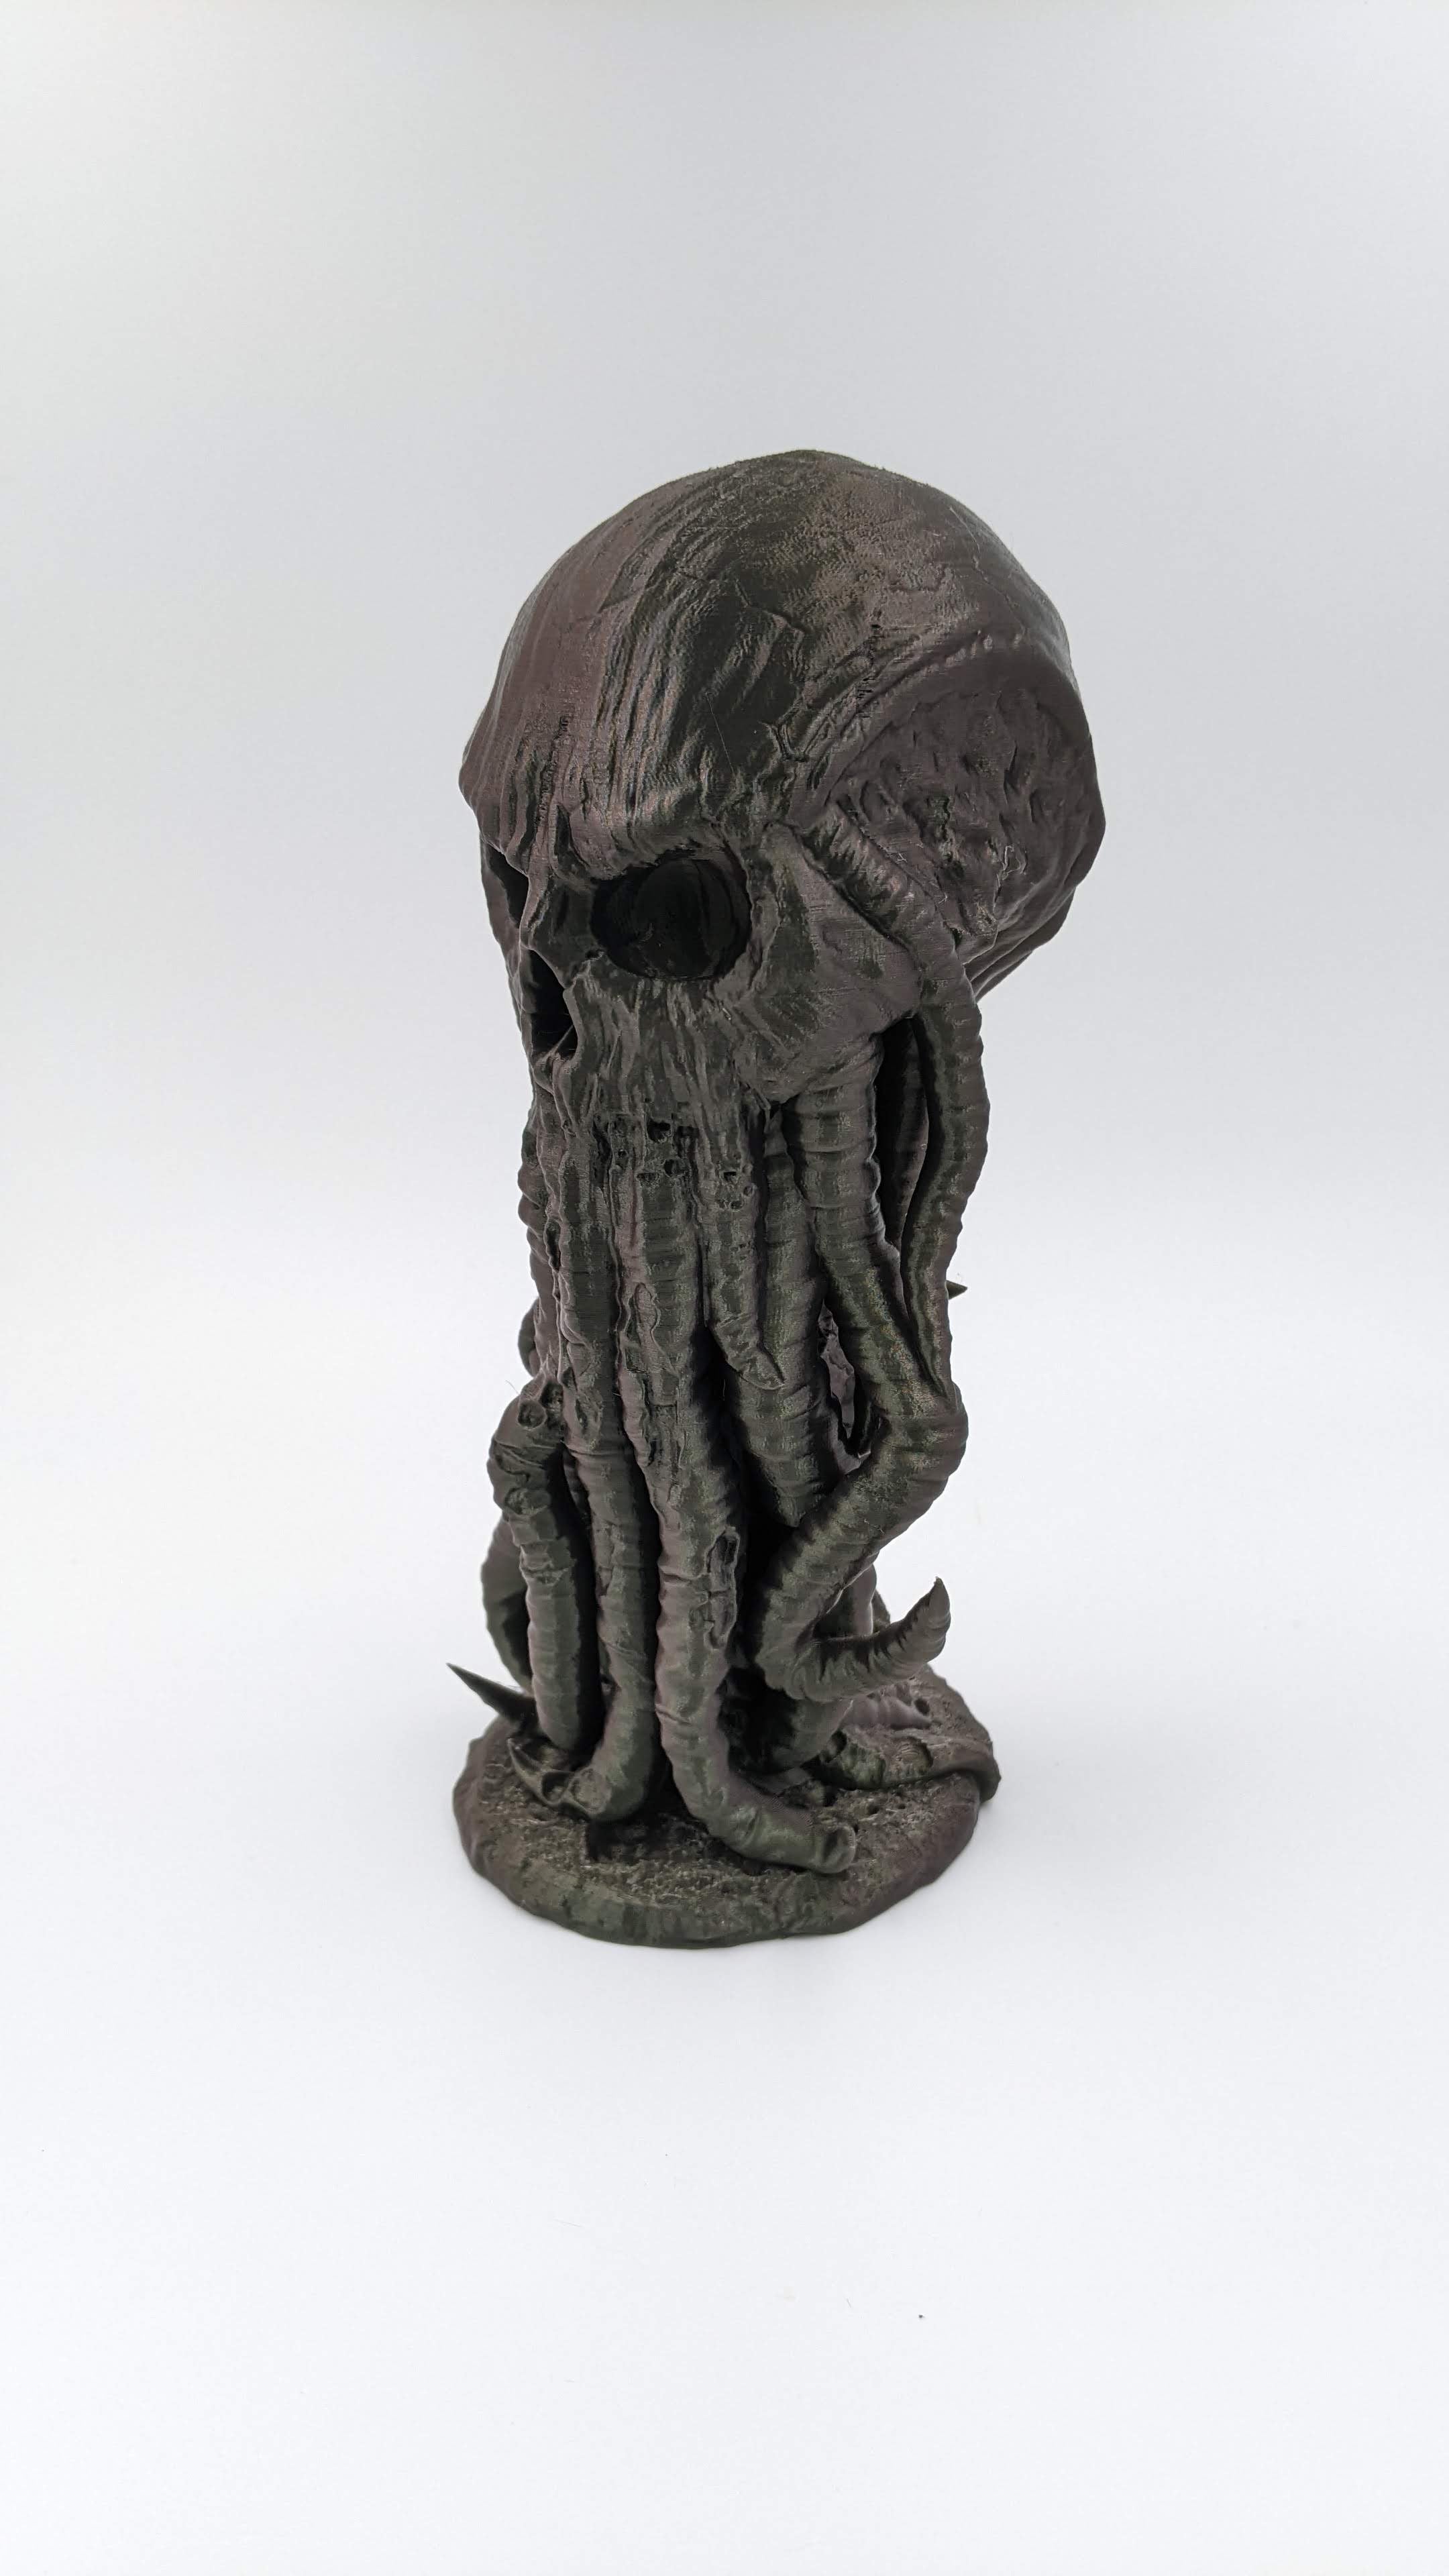 HP Lovecraft Cthulhu Skull